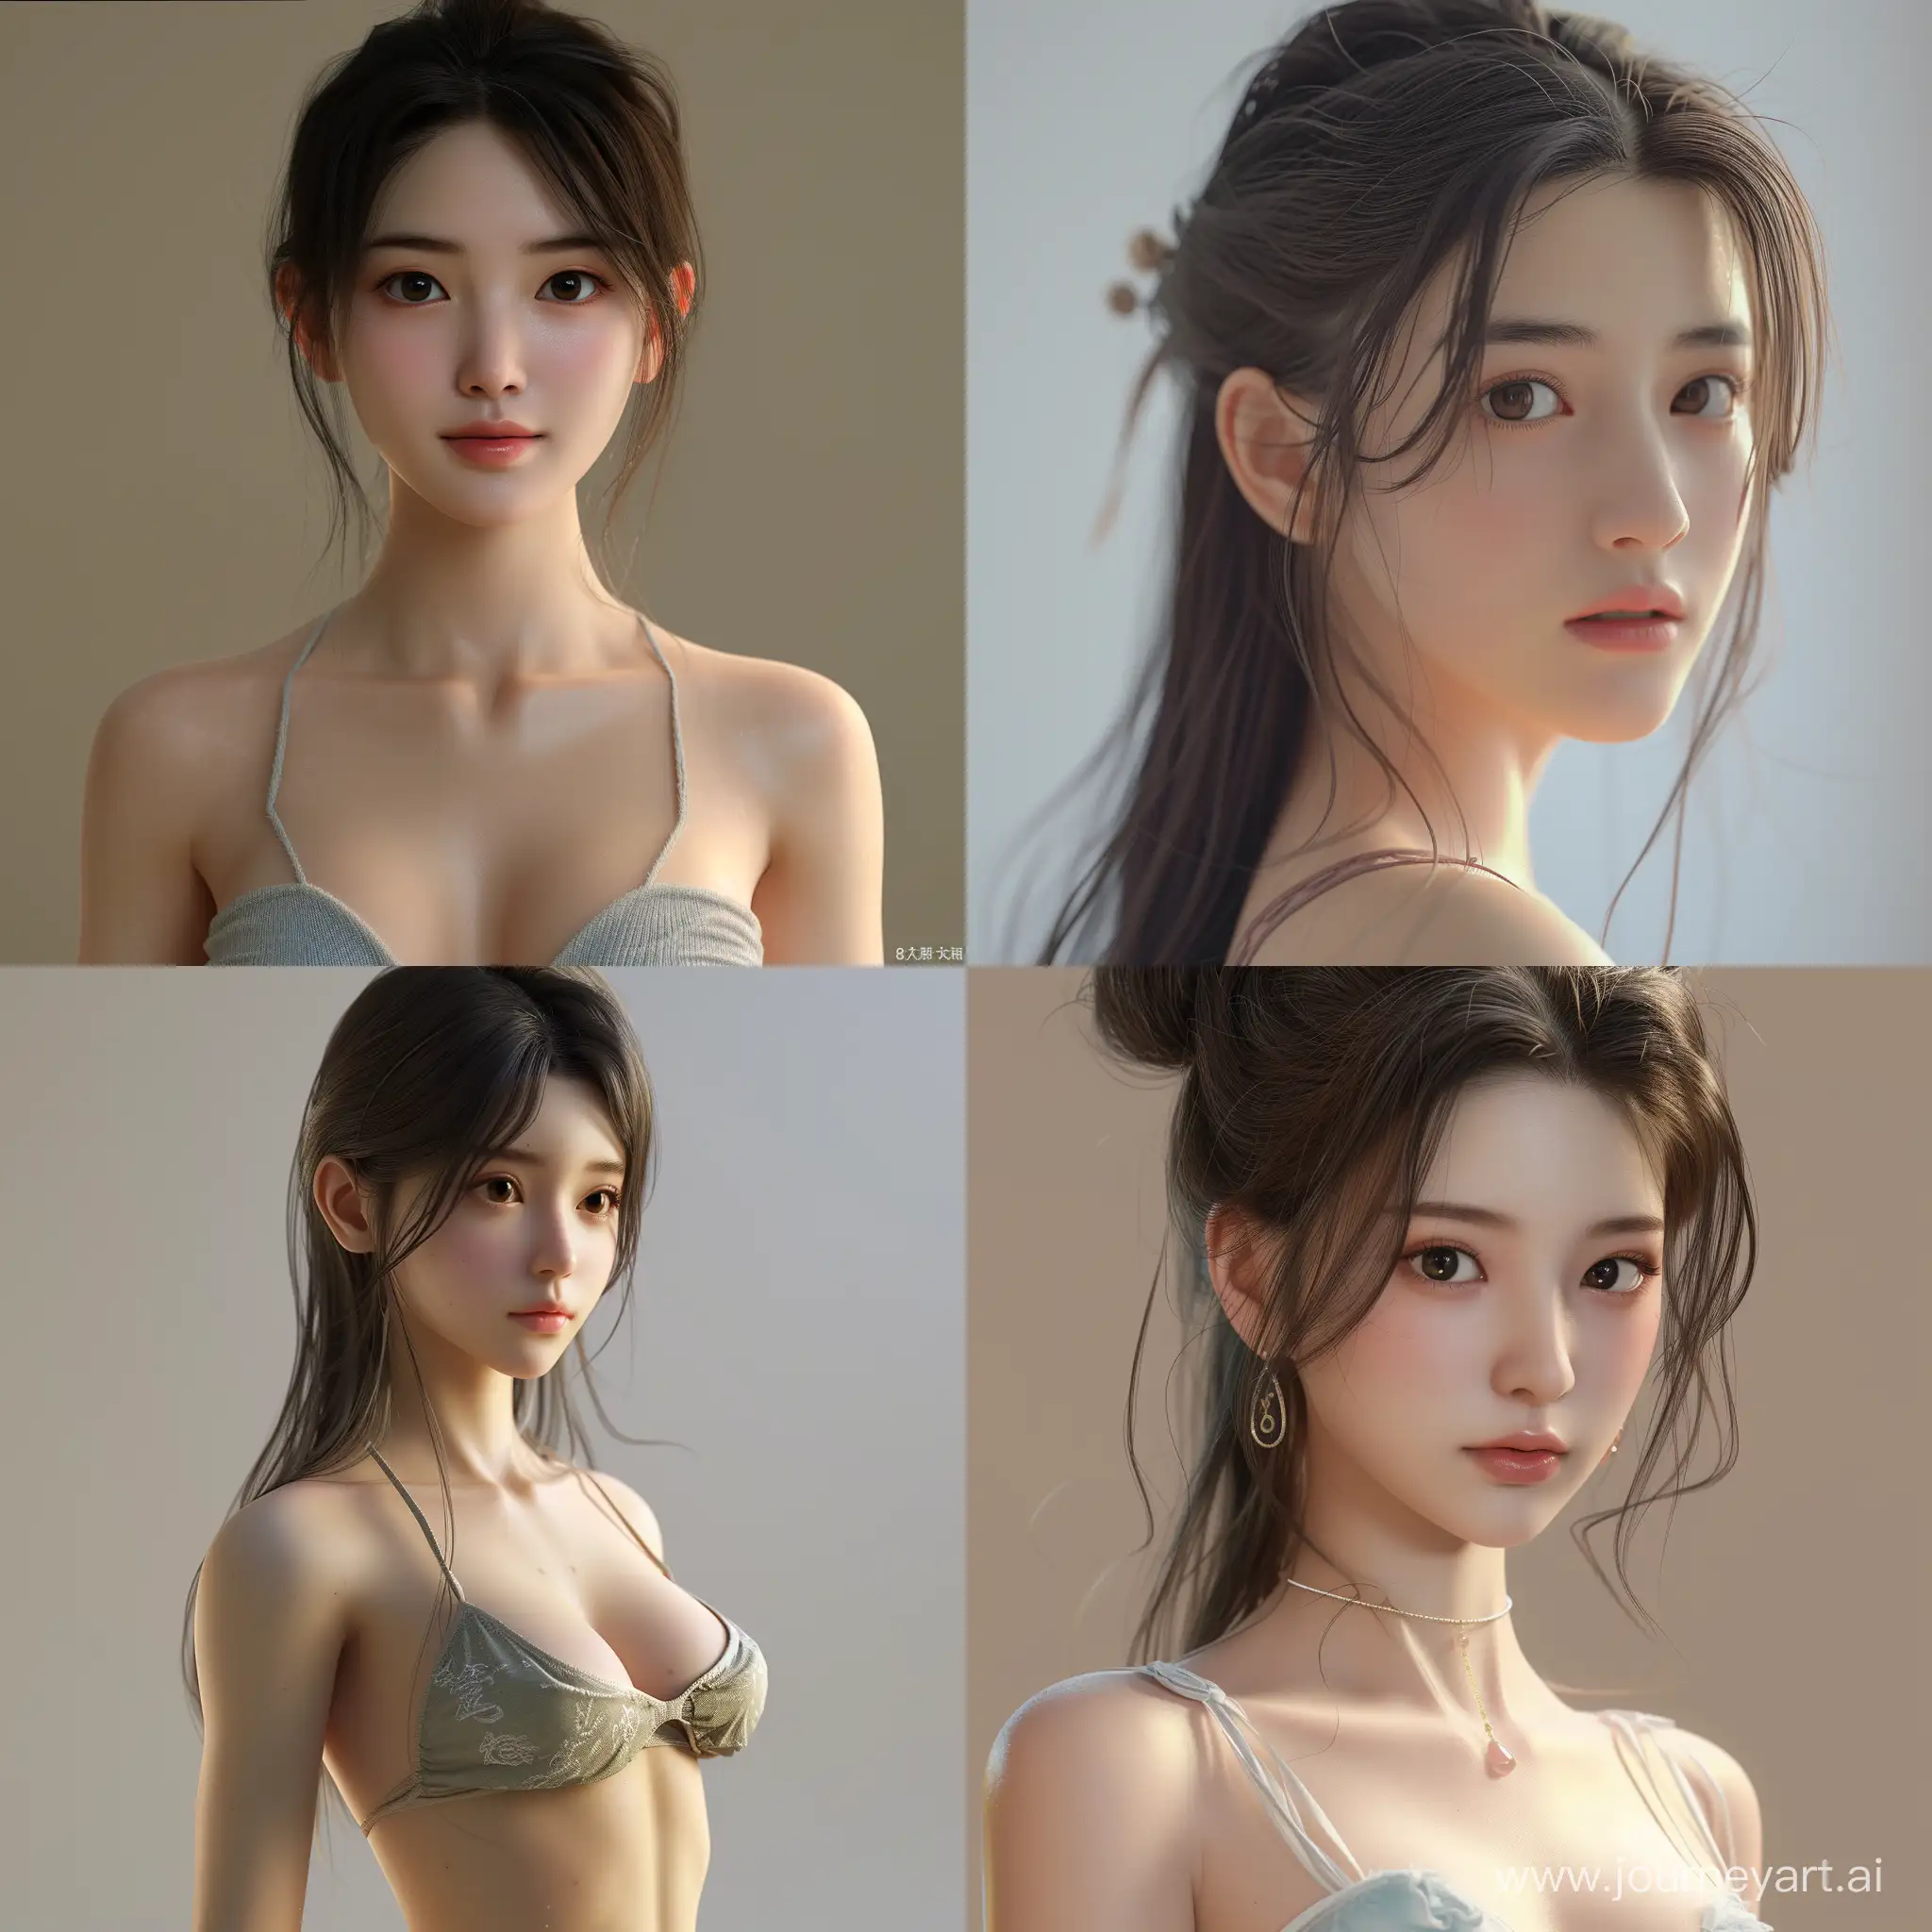 китаянка, 18 лет, красивая, фотореалистичная, идеальное телосложения, брюнетка, 8К разрешения, 500 пиксилей